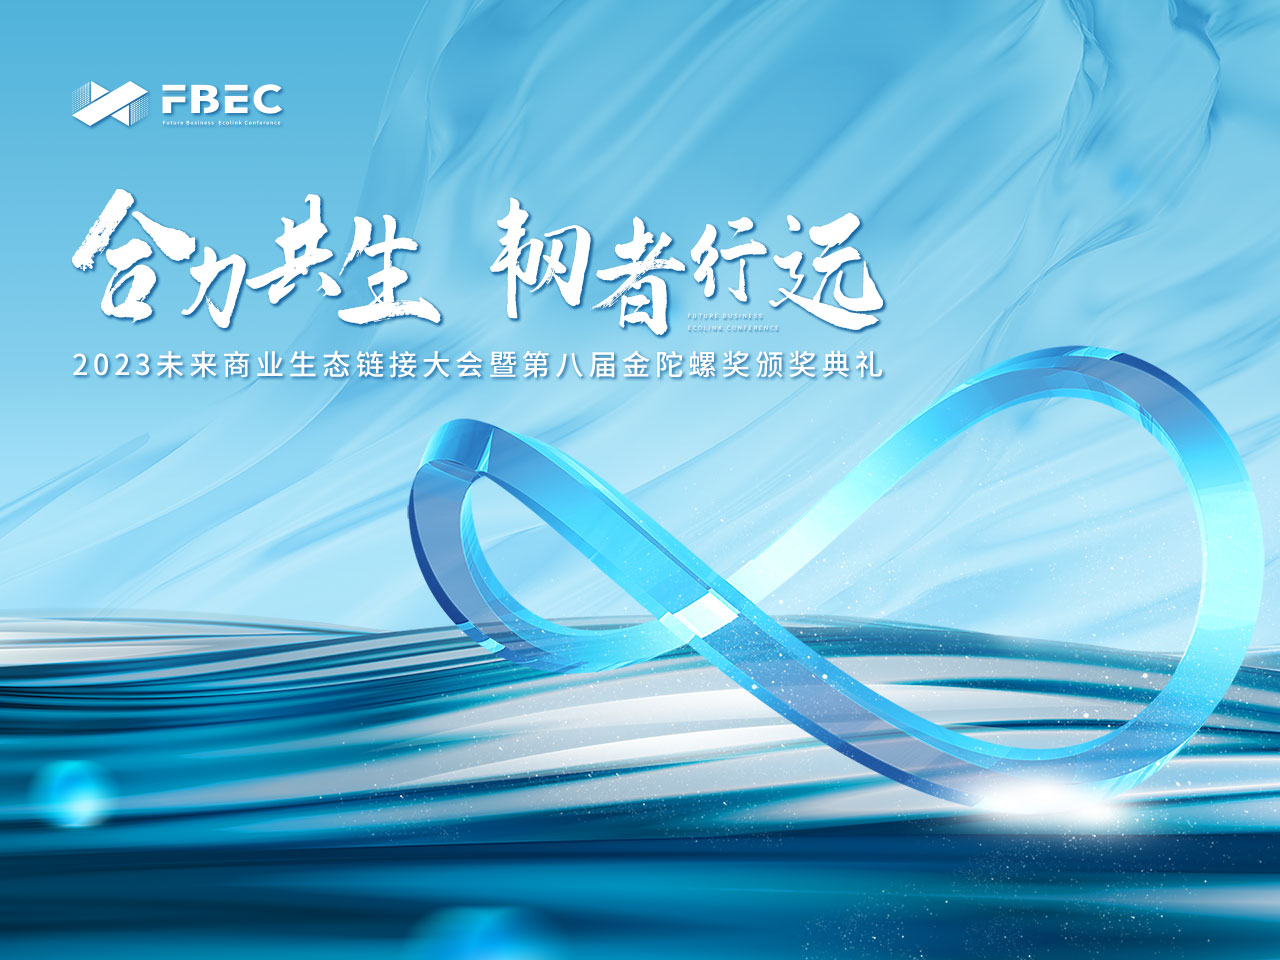 FBEC2023 | 高通 中国区VR/AR负责人 郭鹏确认出席并发表主题演讲